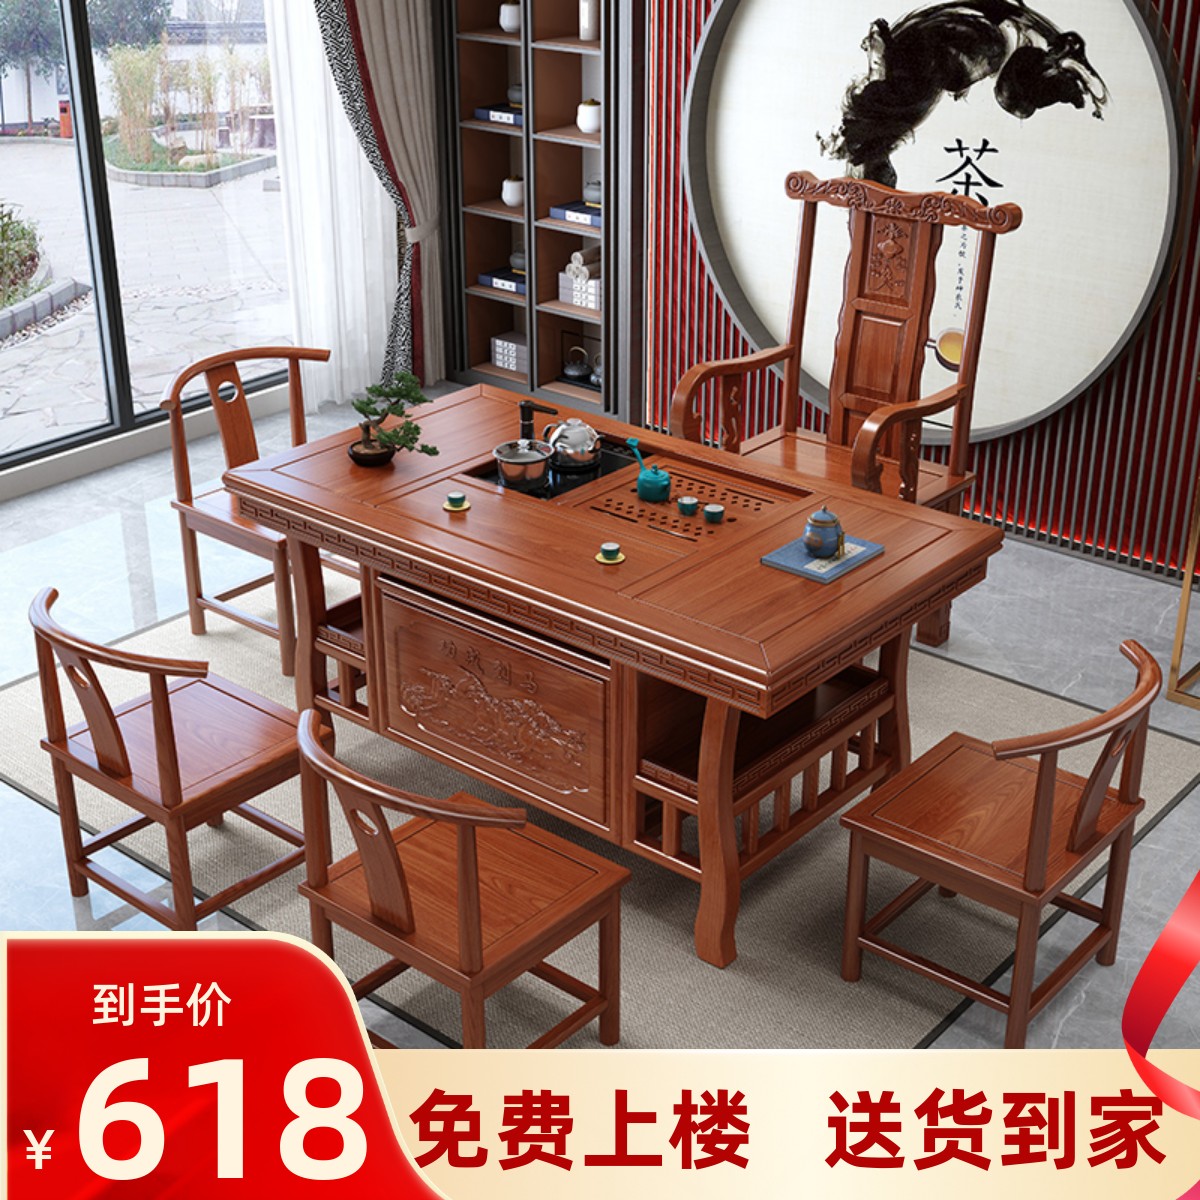 实木新中式茶桌椅组合家用阳台小户型茶台榆木功夫茶几烧水壶一体